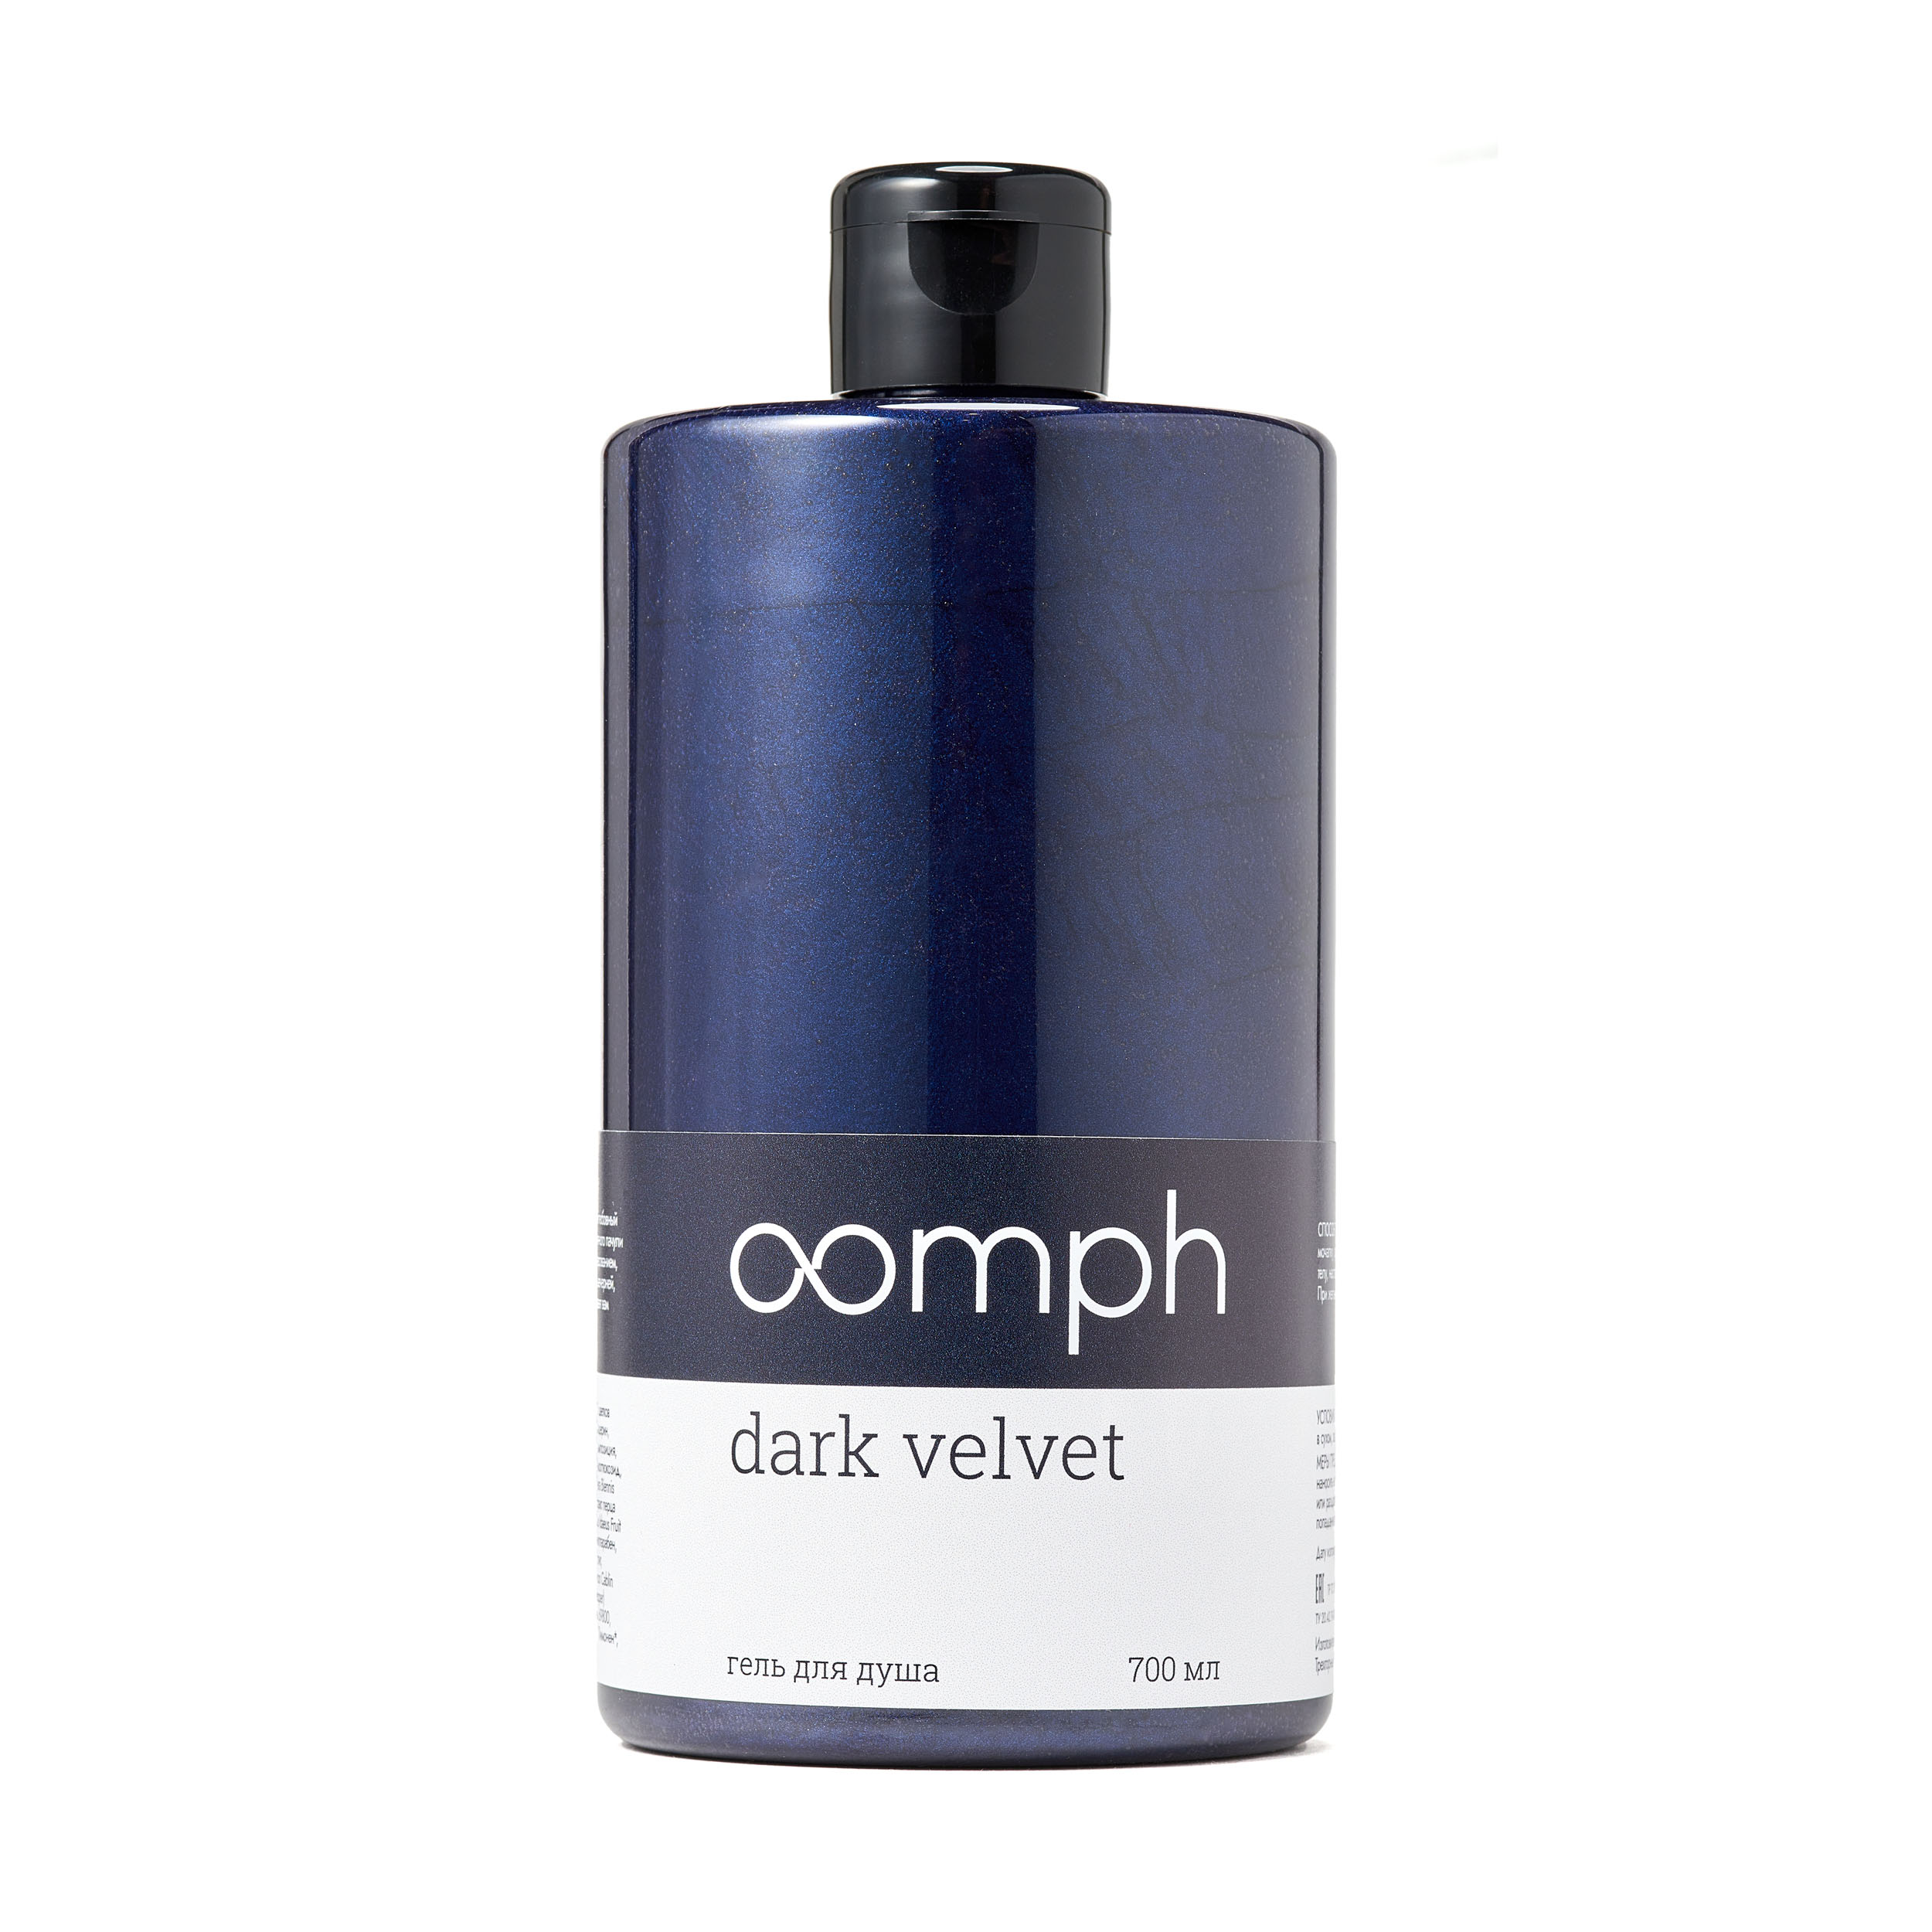 Гель для душа OOMPH Dark velvet 700мл